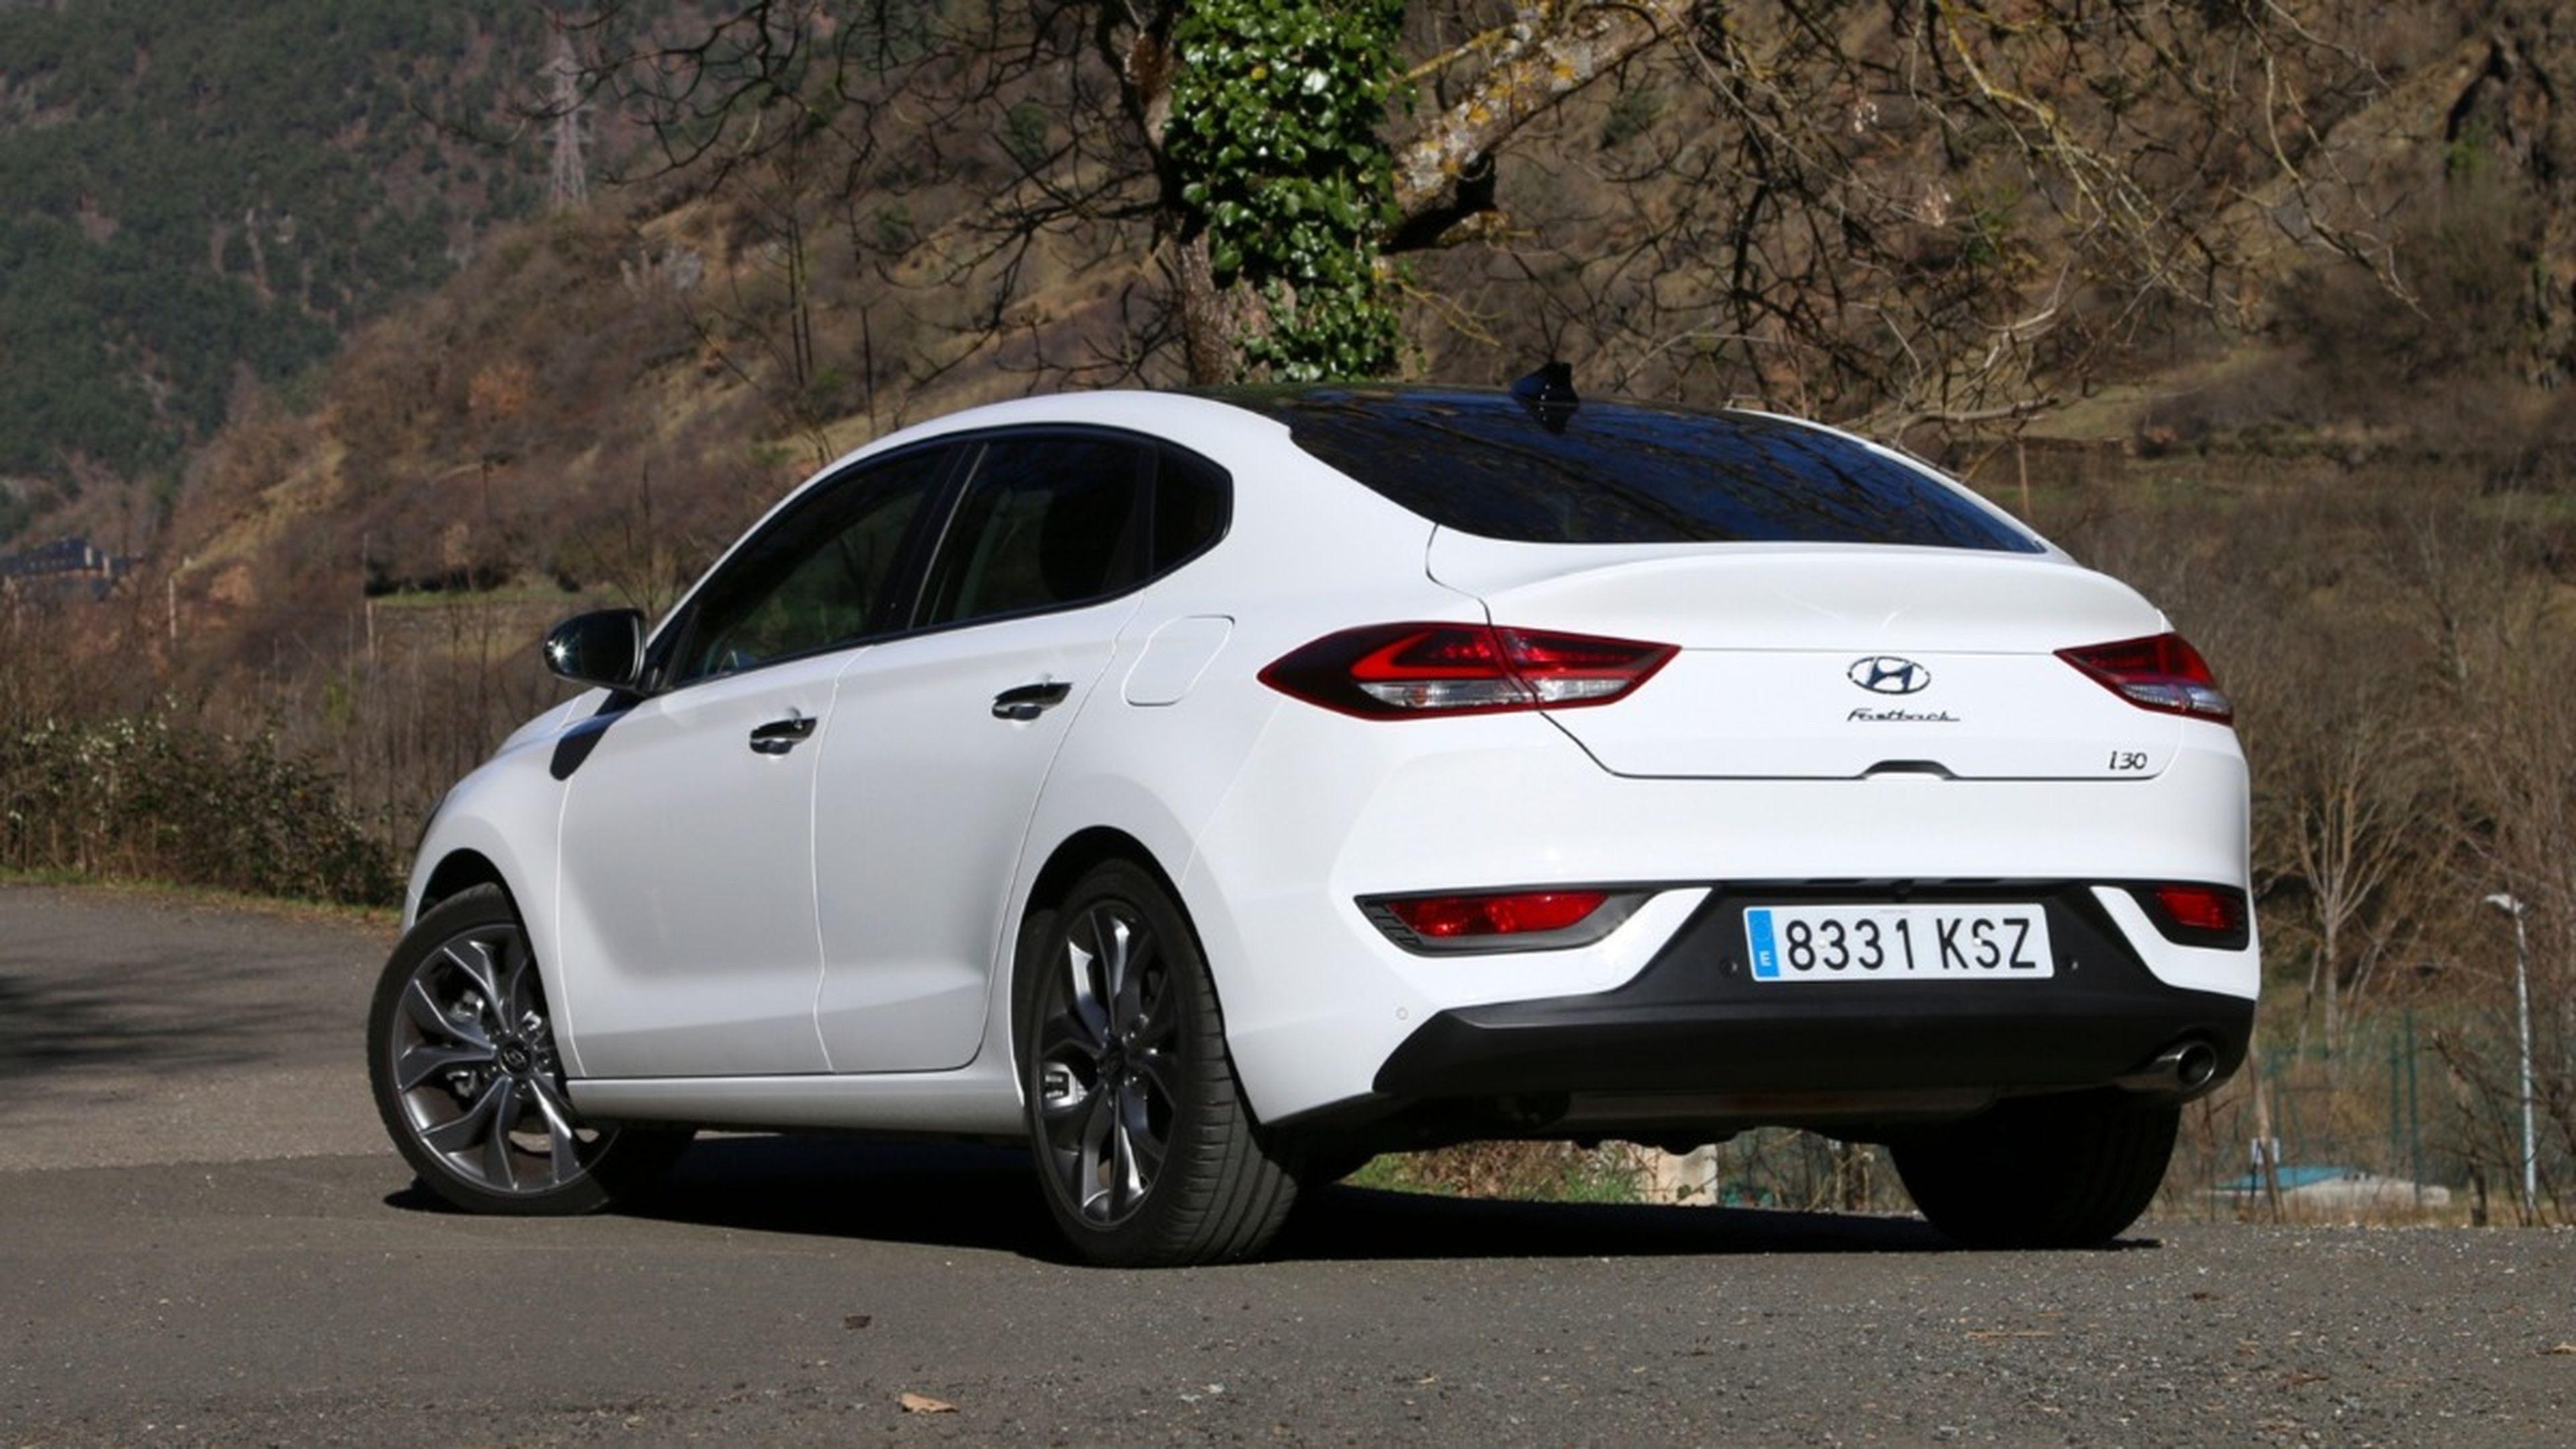 Opinión del Hyundai i30 Fastback: ¿una carrocería recomendable?